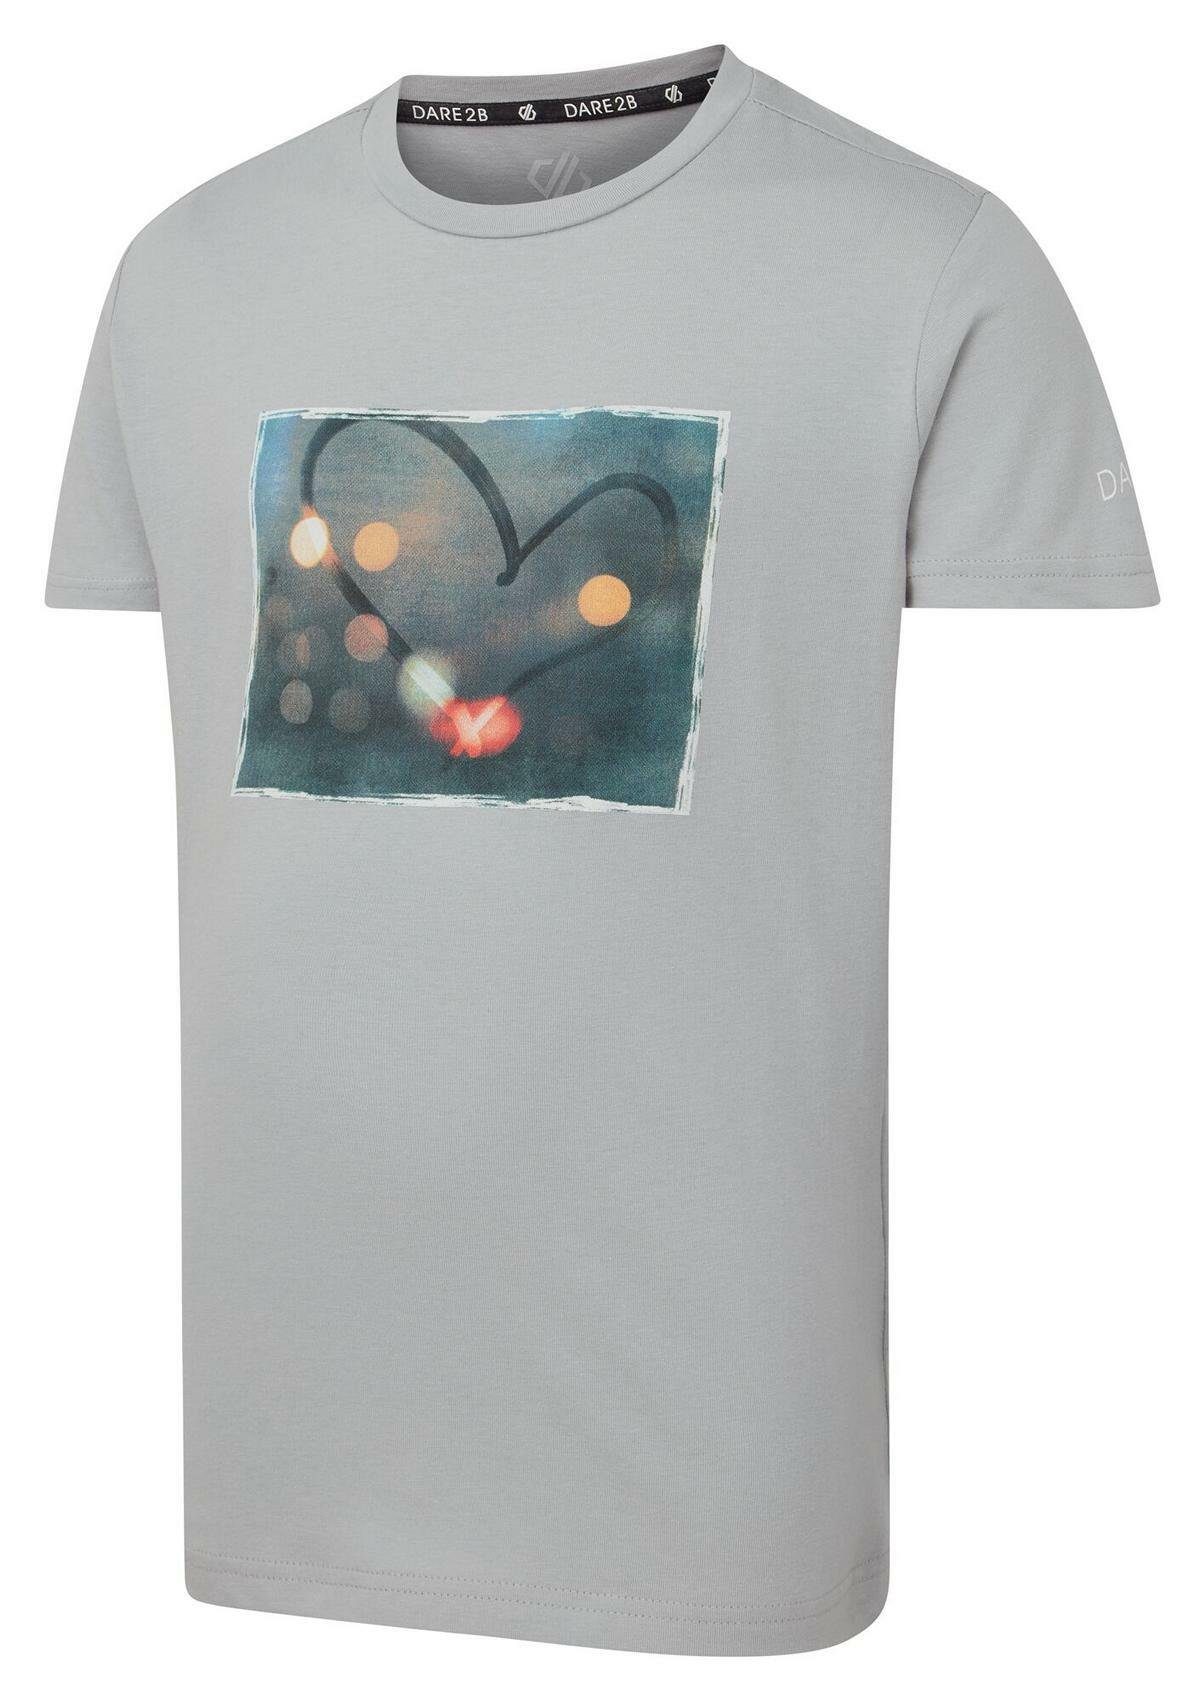 Dare2b T-Shirt Go Beyond Print mit Argent Grey